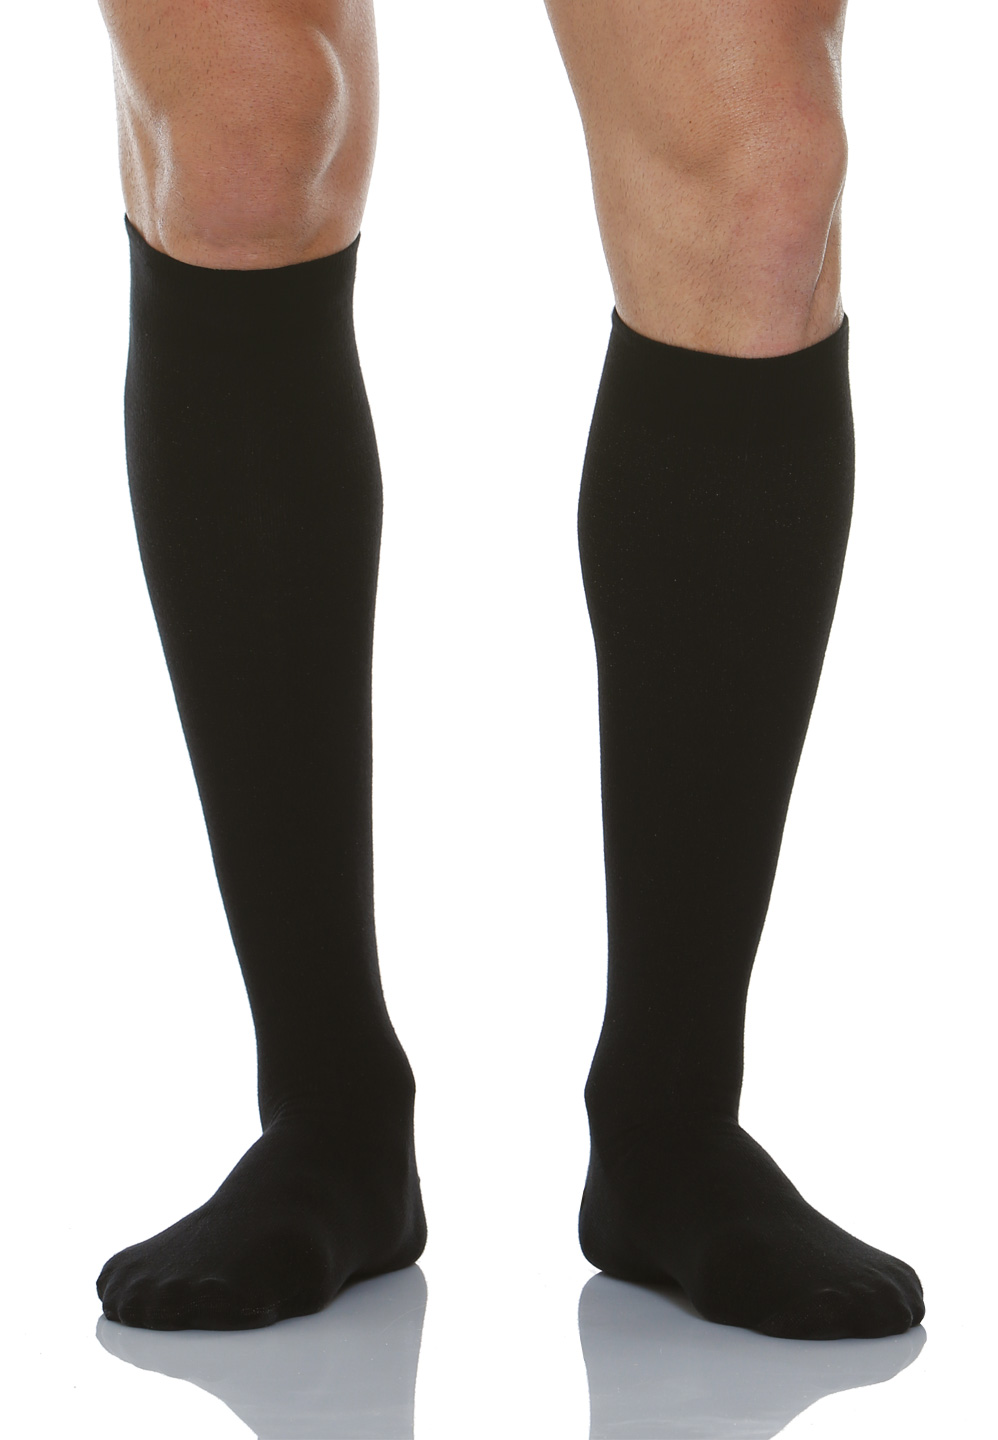 Unisex kompresné ponožky so strieborným vláknom 18-22 mmHg